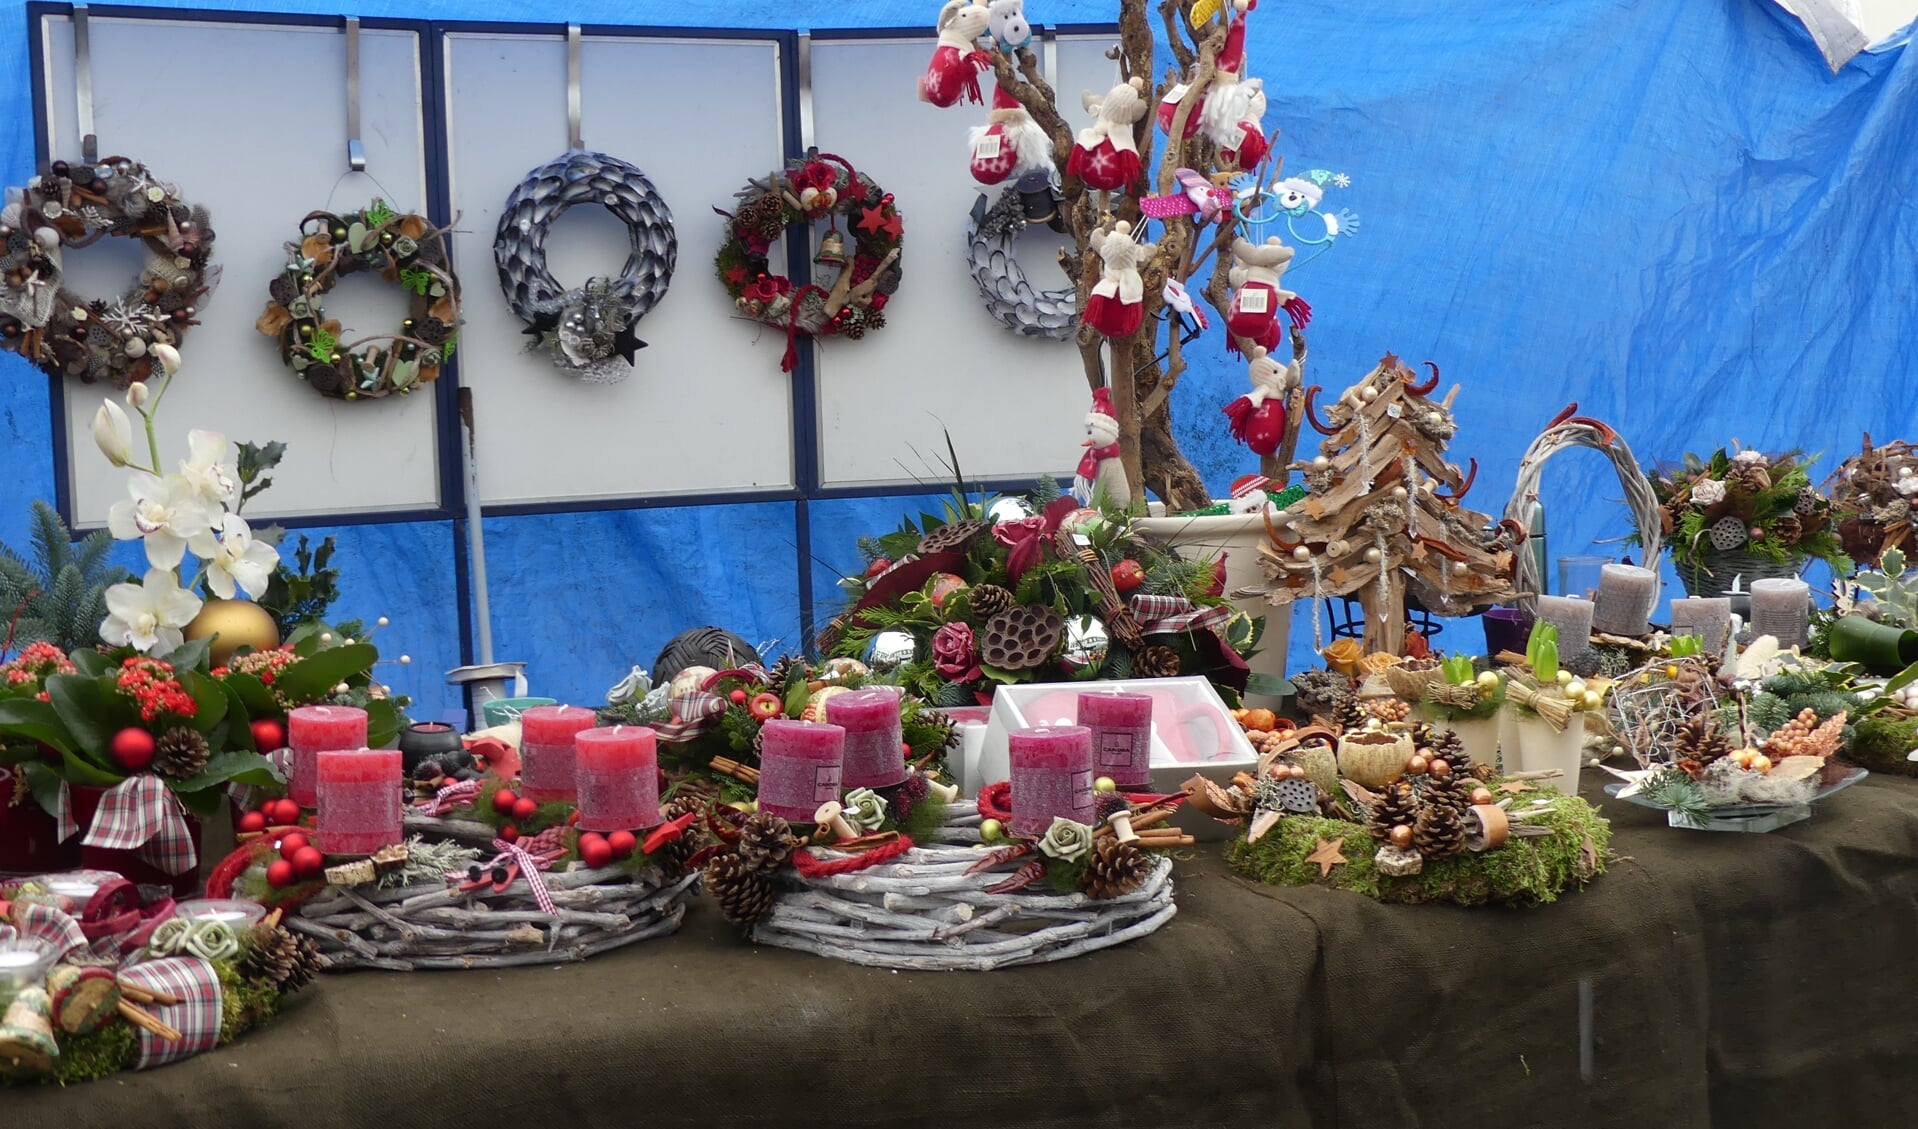 Er is weer van alles te zien en beleven tijdens de kerstmarkt op de Markt in Gennep. 